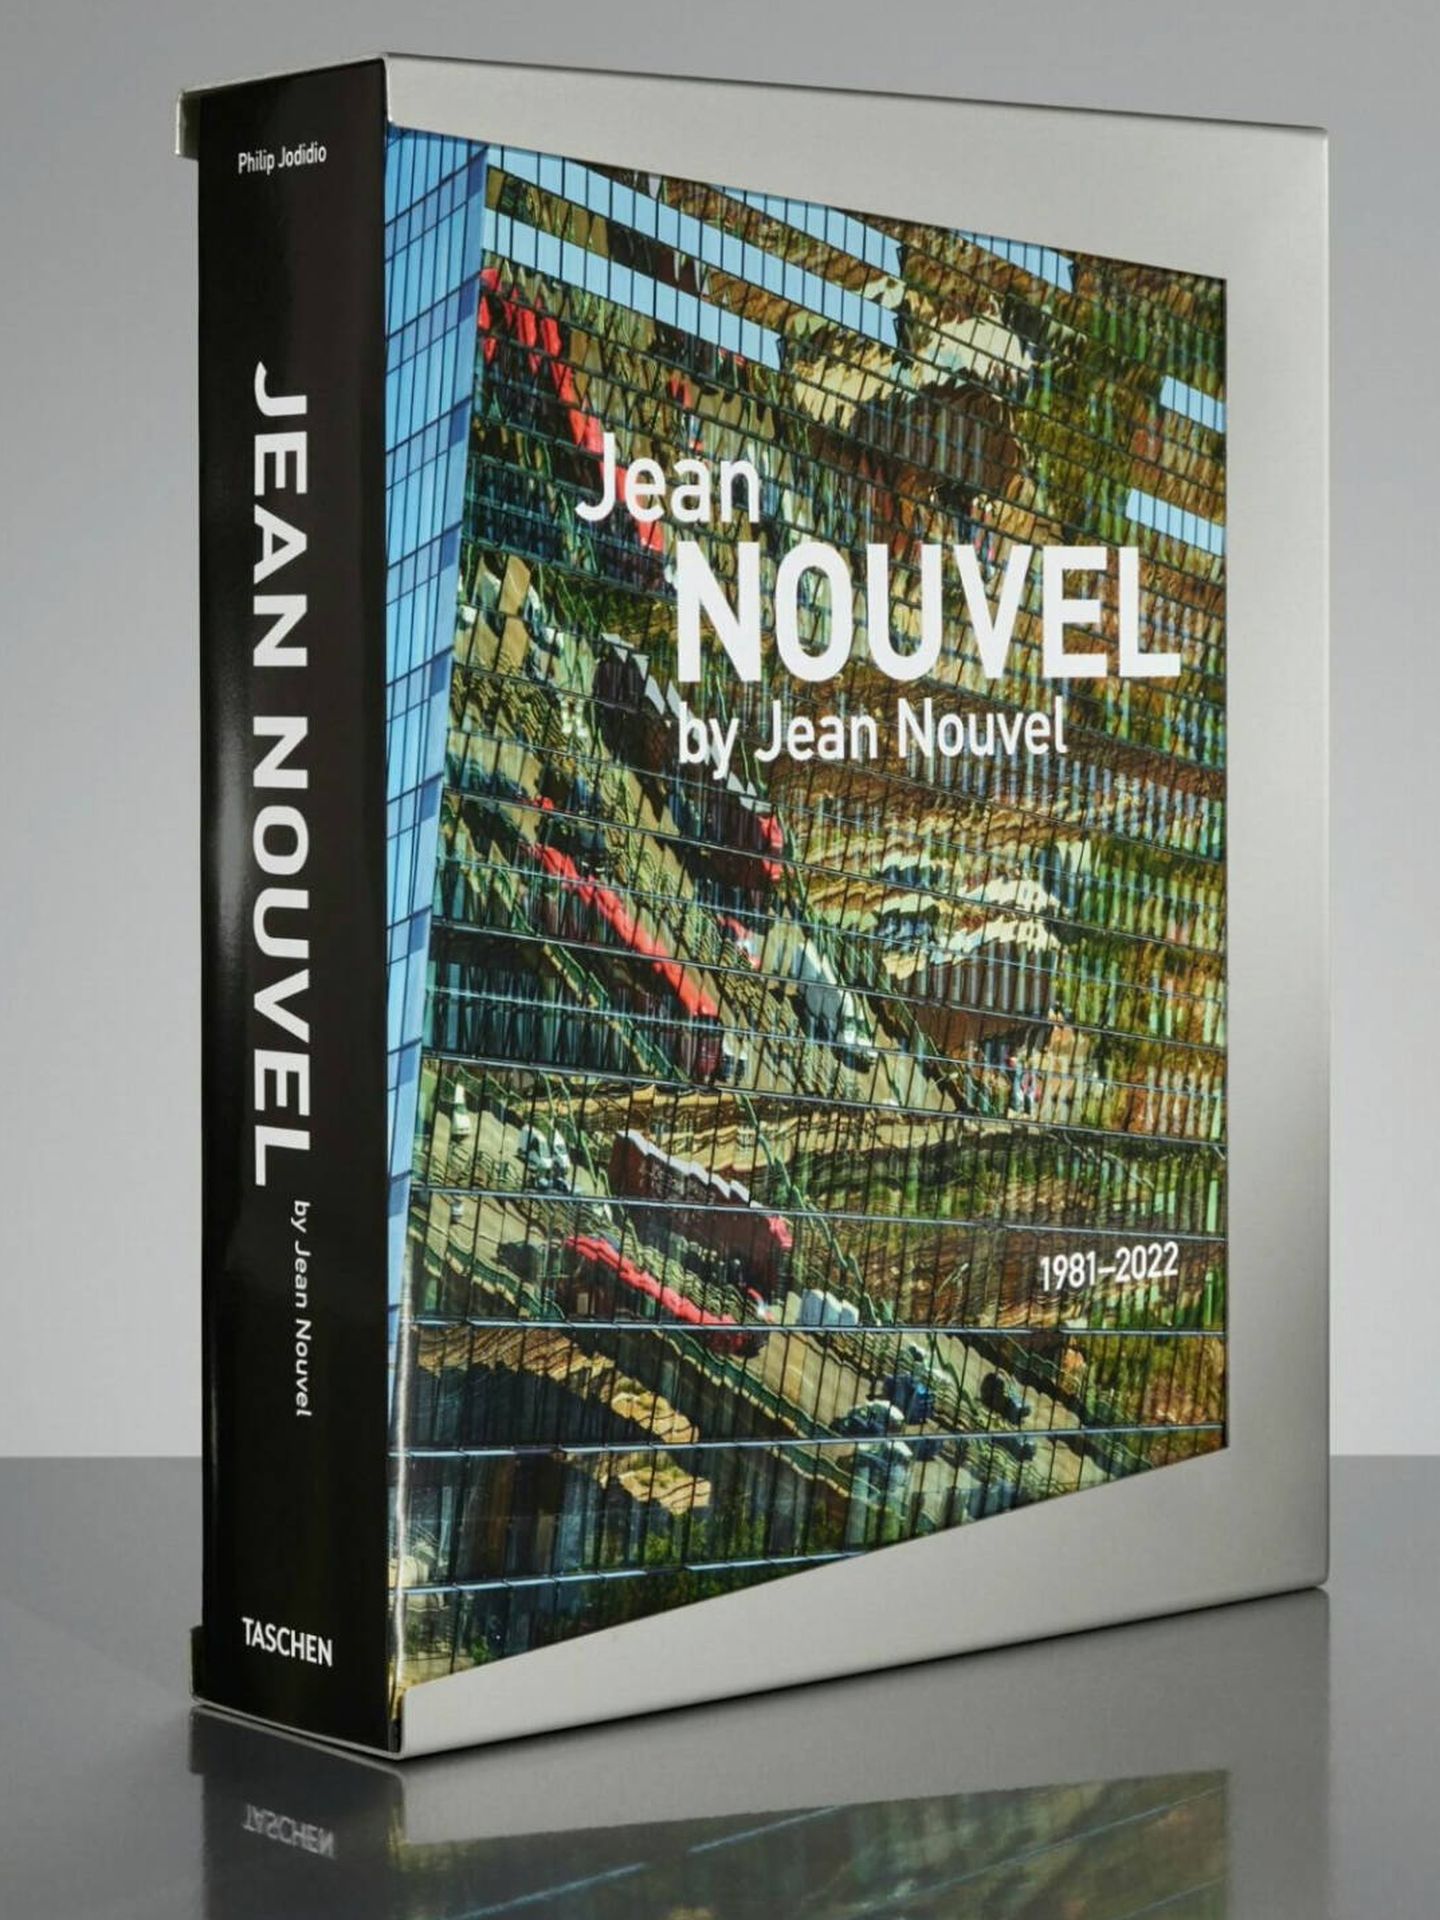 Jean Nouvel by Jean Nouvel. (Cortesía)